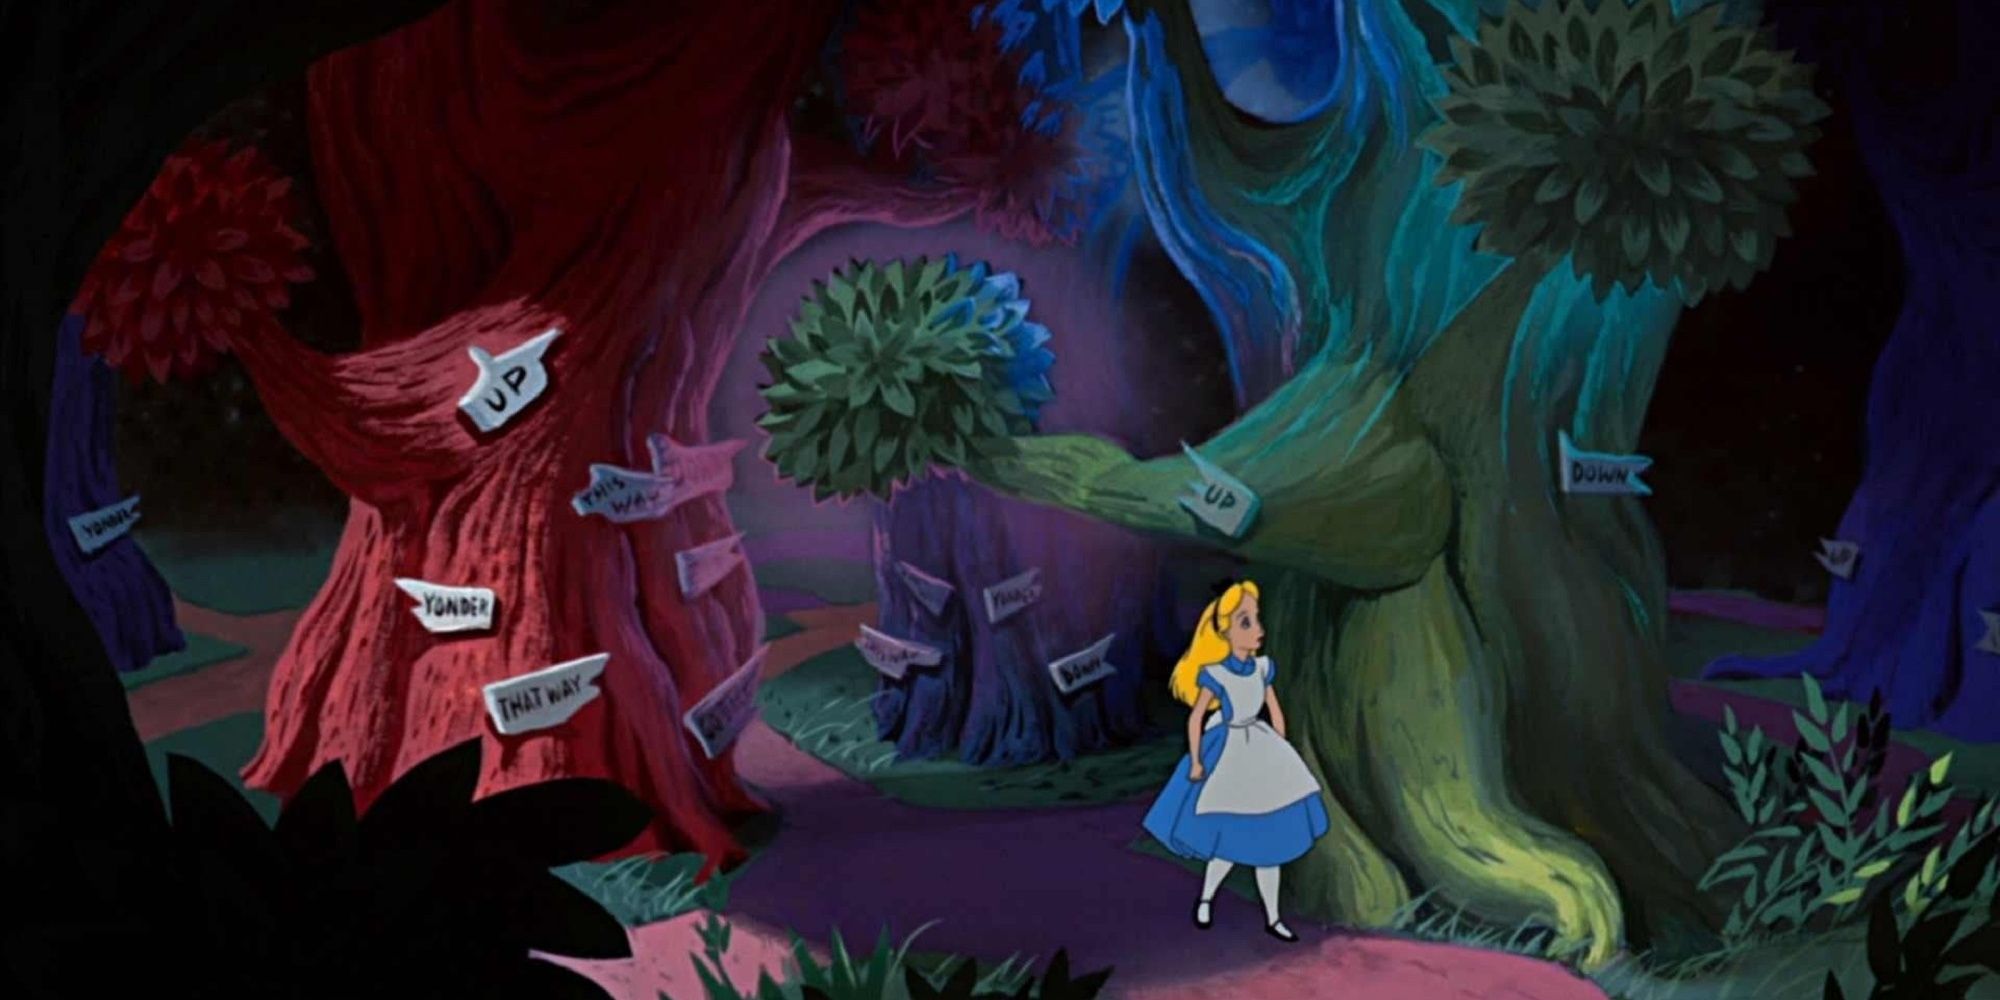 Alice walking through the forest in Wonderland.